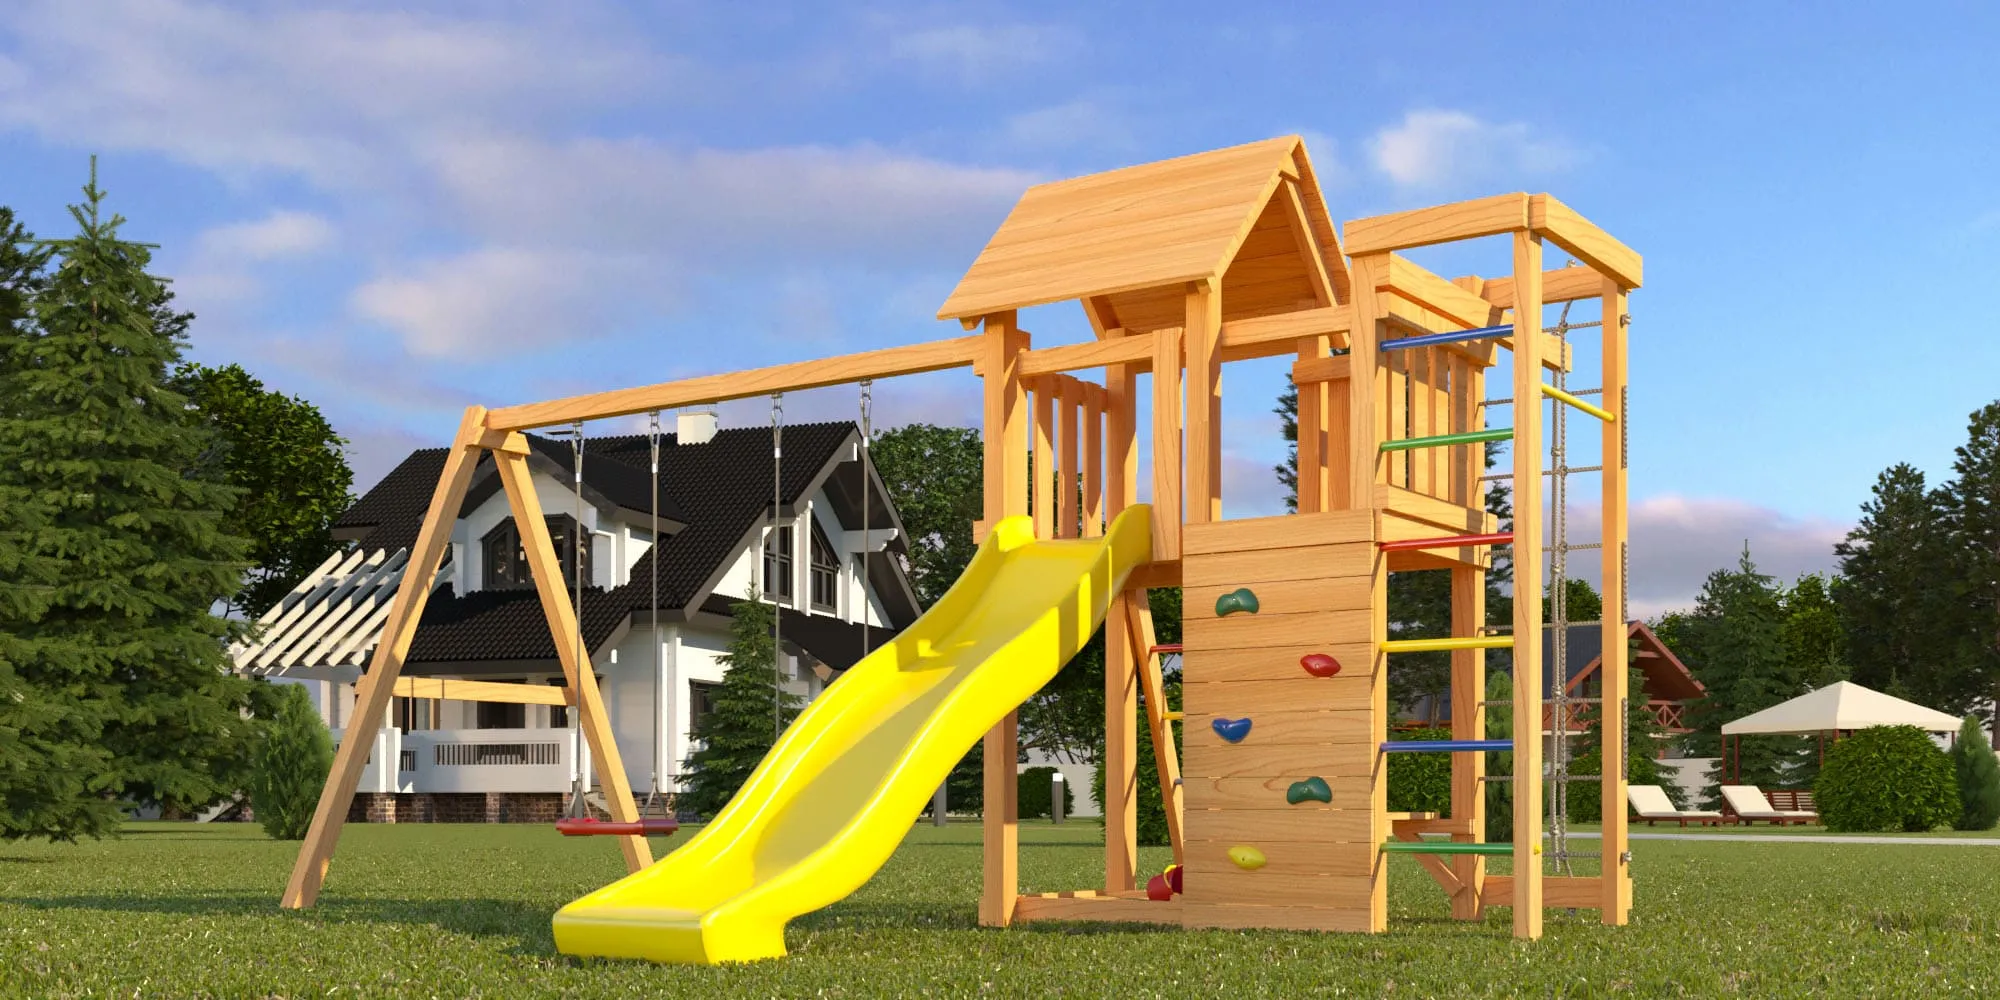 Детские горки для дачи/площадки: безопасность, конструкция, изготовление самостоятельно